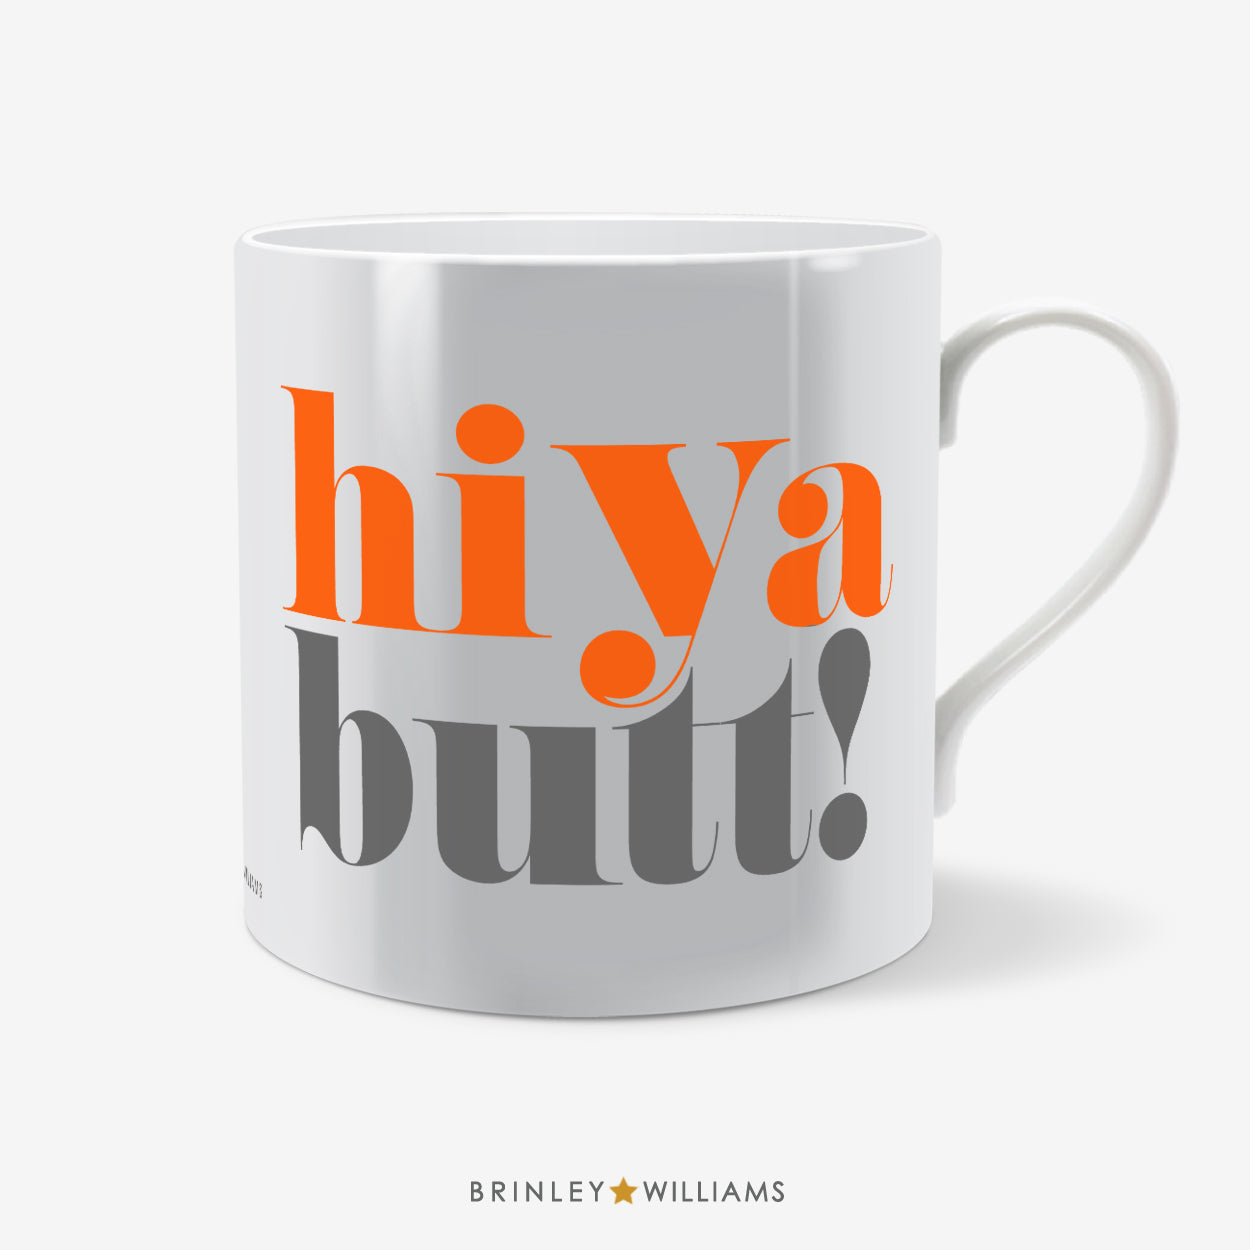 Hiya Butt Welsh Mug - Orange